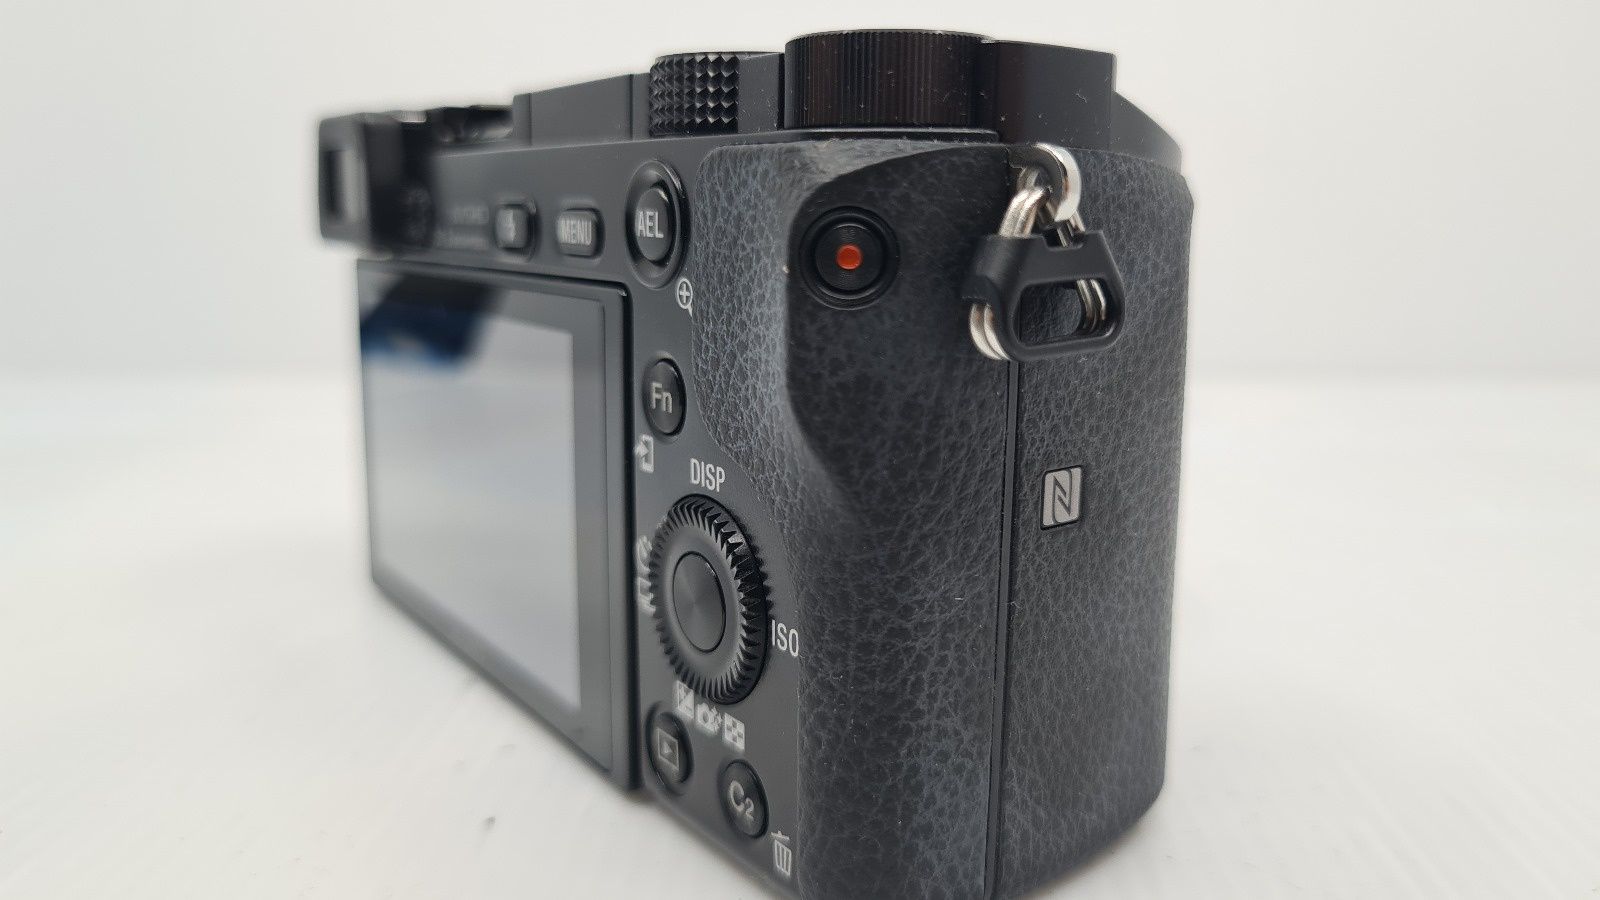 Camera mirrorless Sony A6000 + 16-50 full box